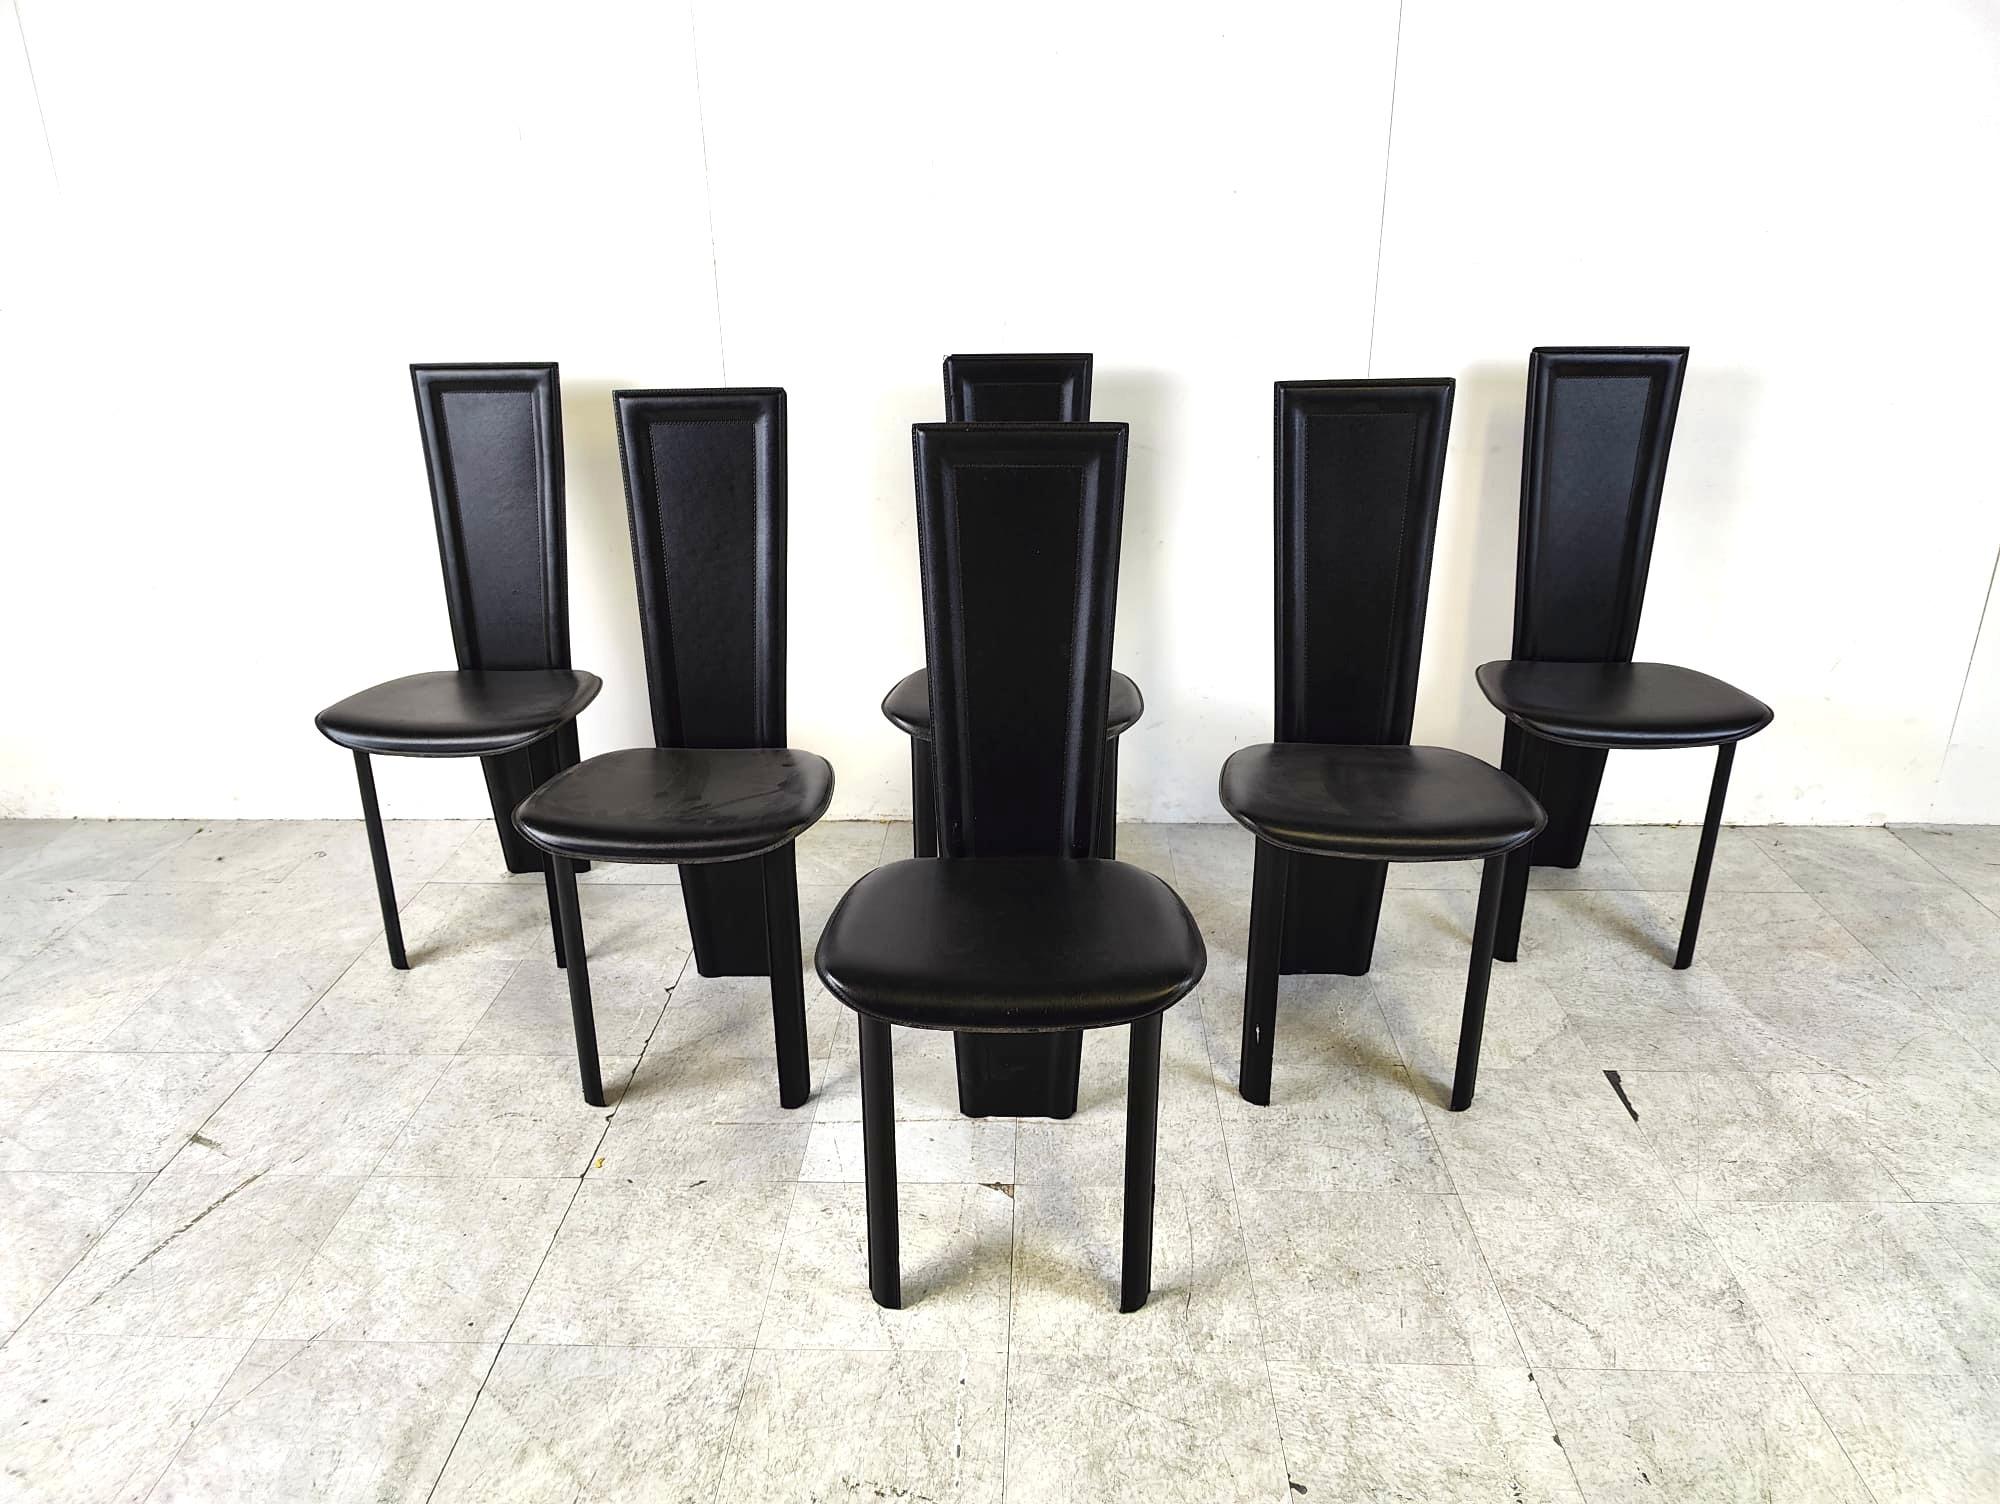 Satz von 6 schwarzen italienischen Lederstühlen mit hoher Rückenlehne.

schönes, schlankes und zeitloses Design.

Die Stühle sind in gutem Zustand

1980er Jahre - Italien

Abmessungen
Höhe: 102cm/40.15